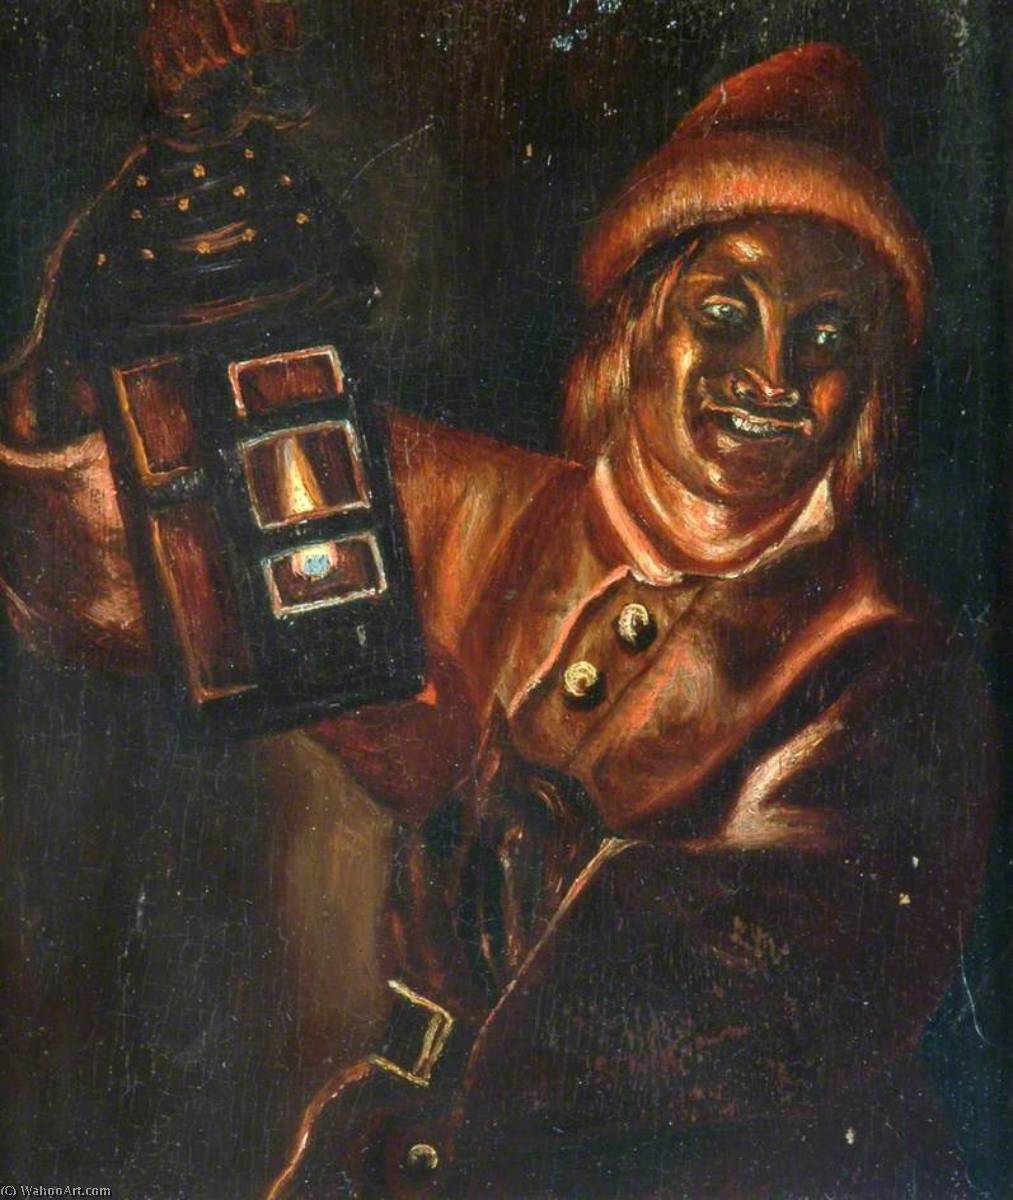 WikiOO.org - Enciklopedija likovnih umjetnosti - Slikarstvo, umjetnička djela Patrick Branwell Brontë - The Lincolnshire Link Boy